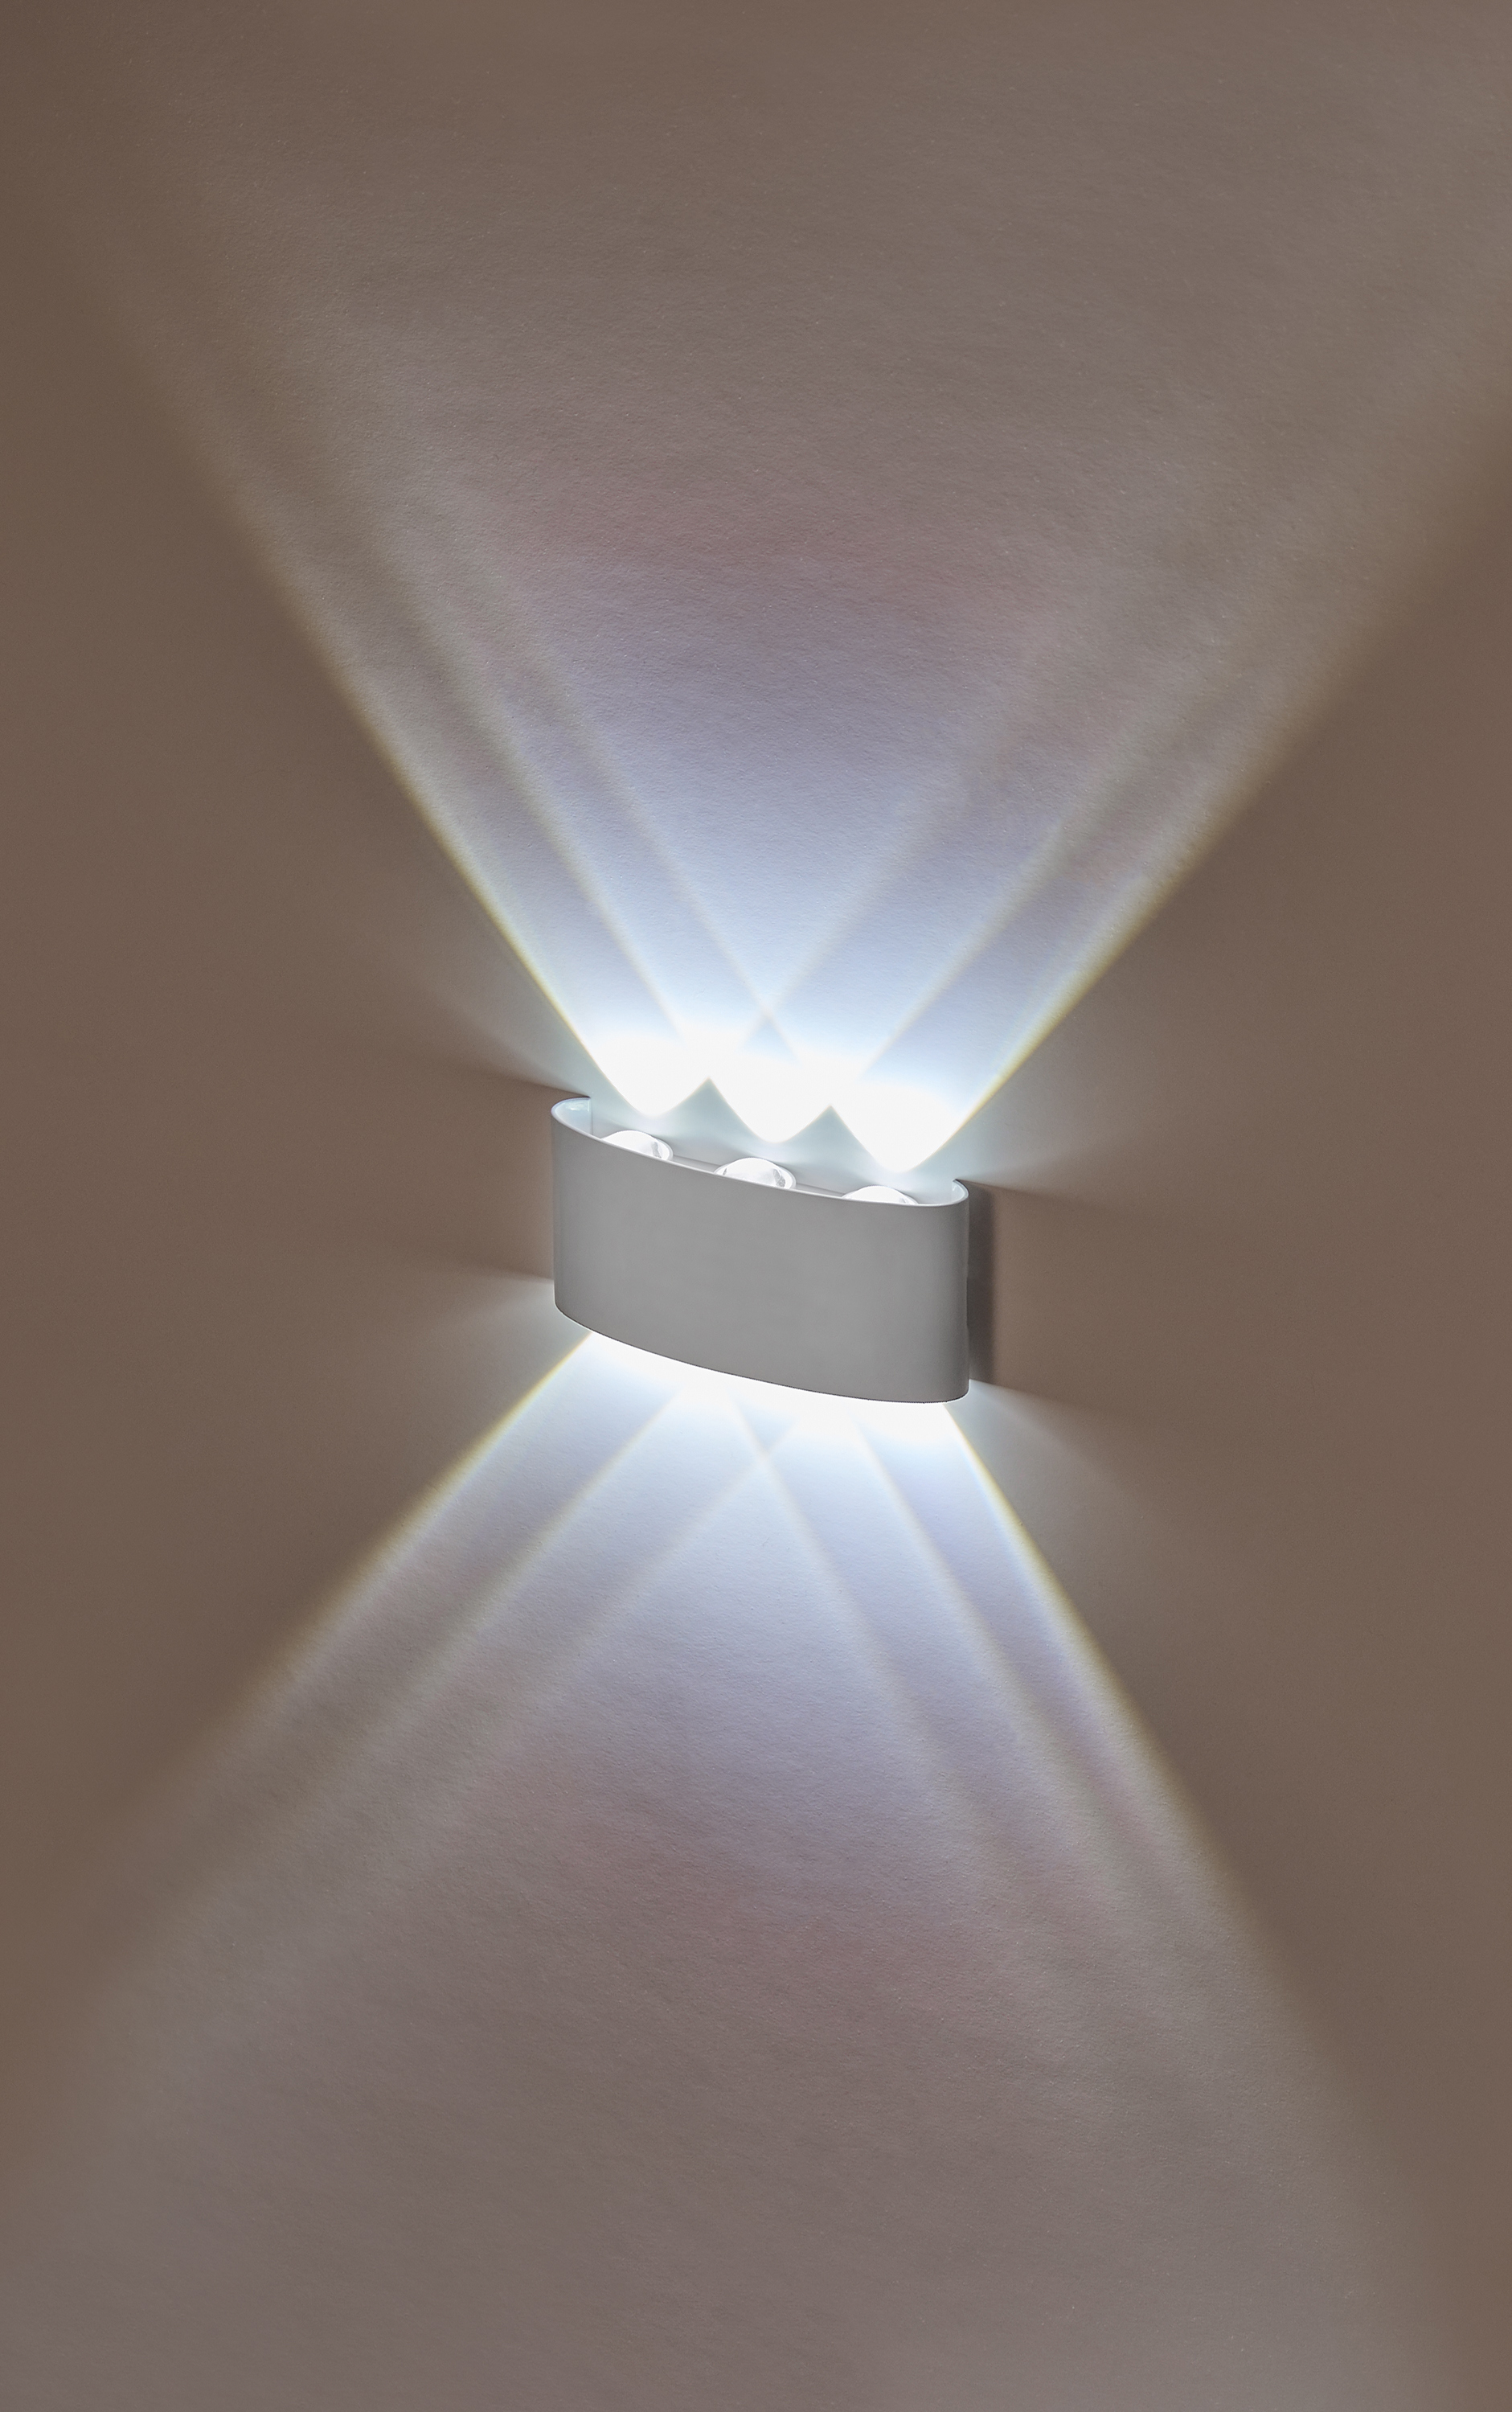 90241150 Настенный светильник светодиодный LED 6x1W 4200K Белый 220V IP54 IL.0014.0001-6 WH нейтральный белый свет цвет белый STLM-0146155 IMEX